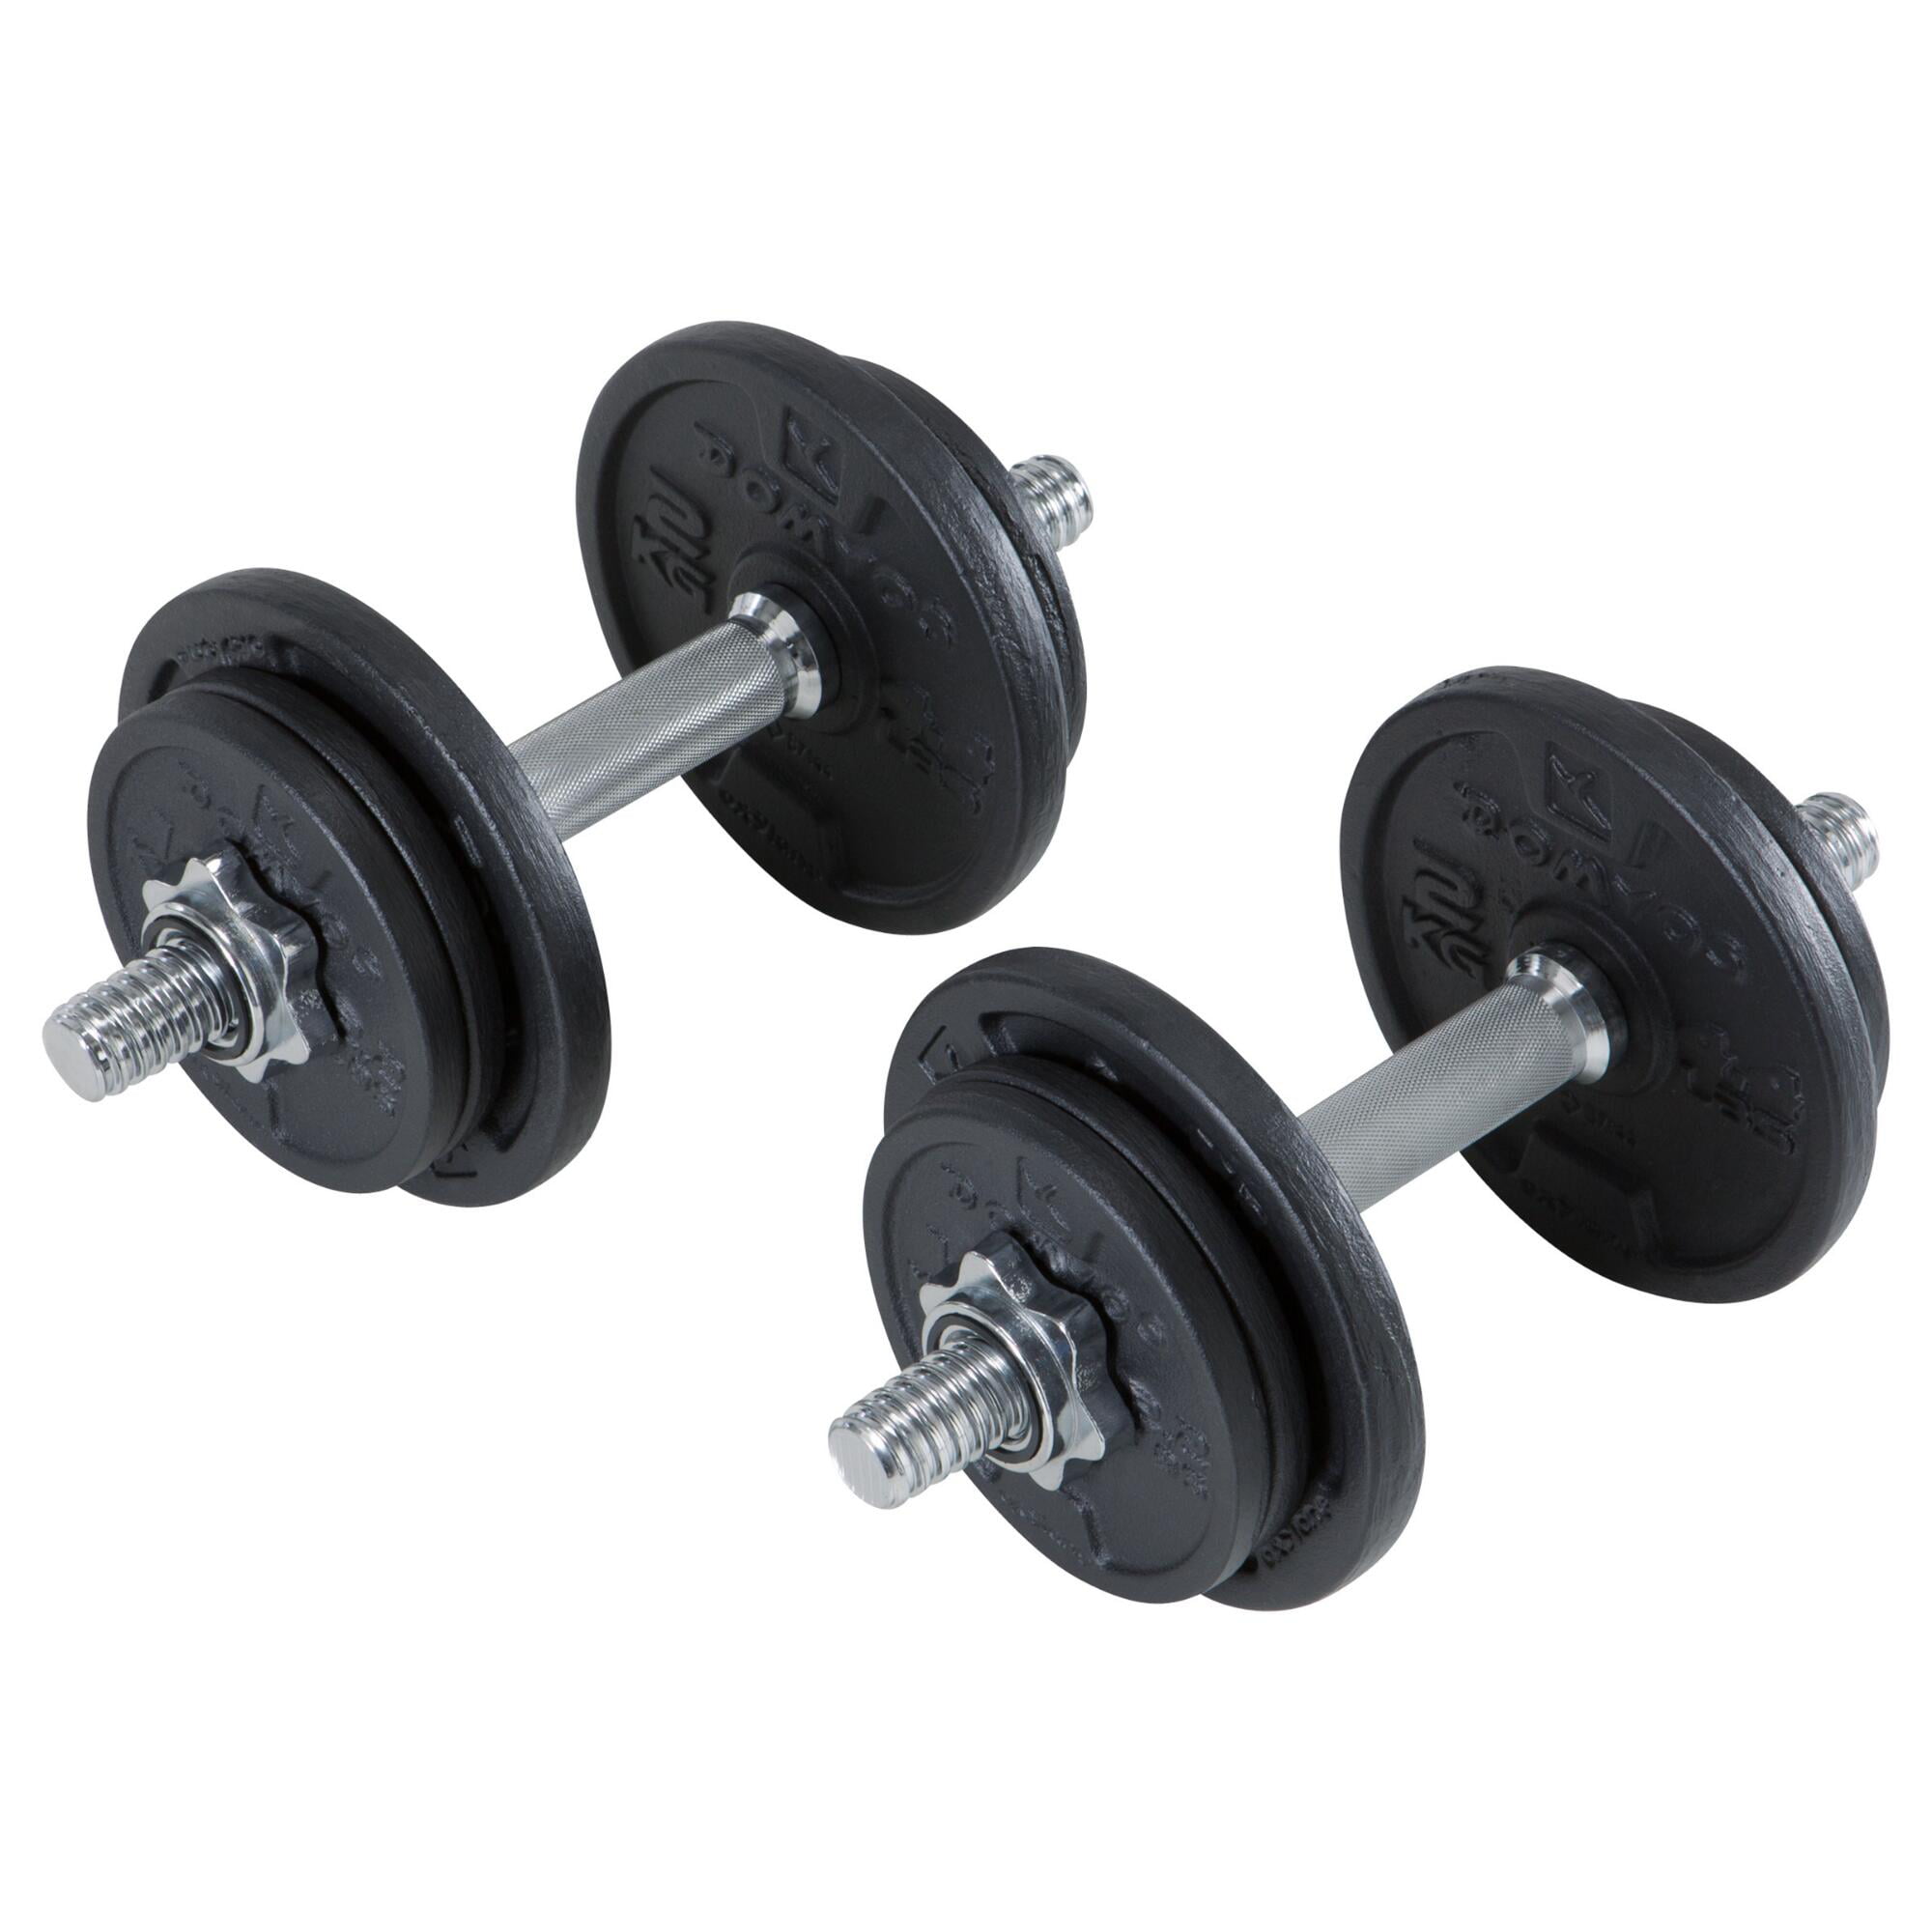 1 Set Dumbbells Dumbells Weights Gym Fitness Training Biceps Barbell Bar Black